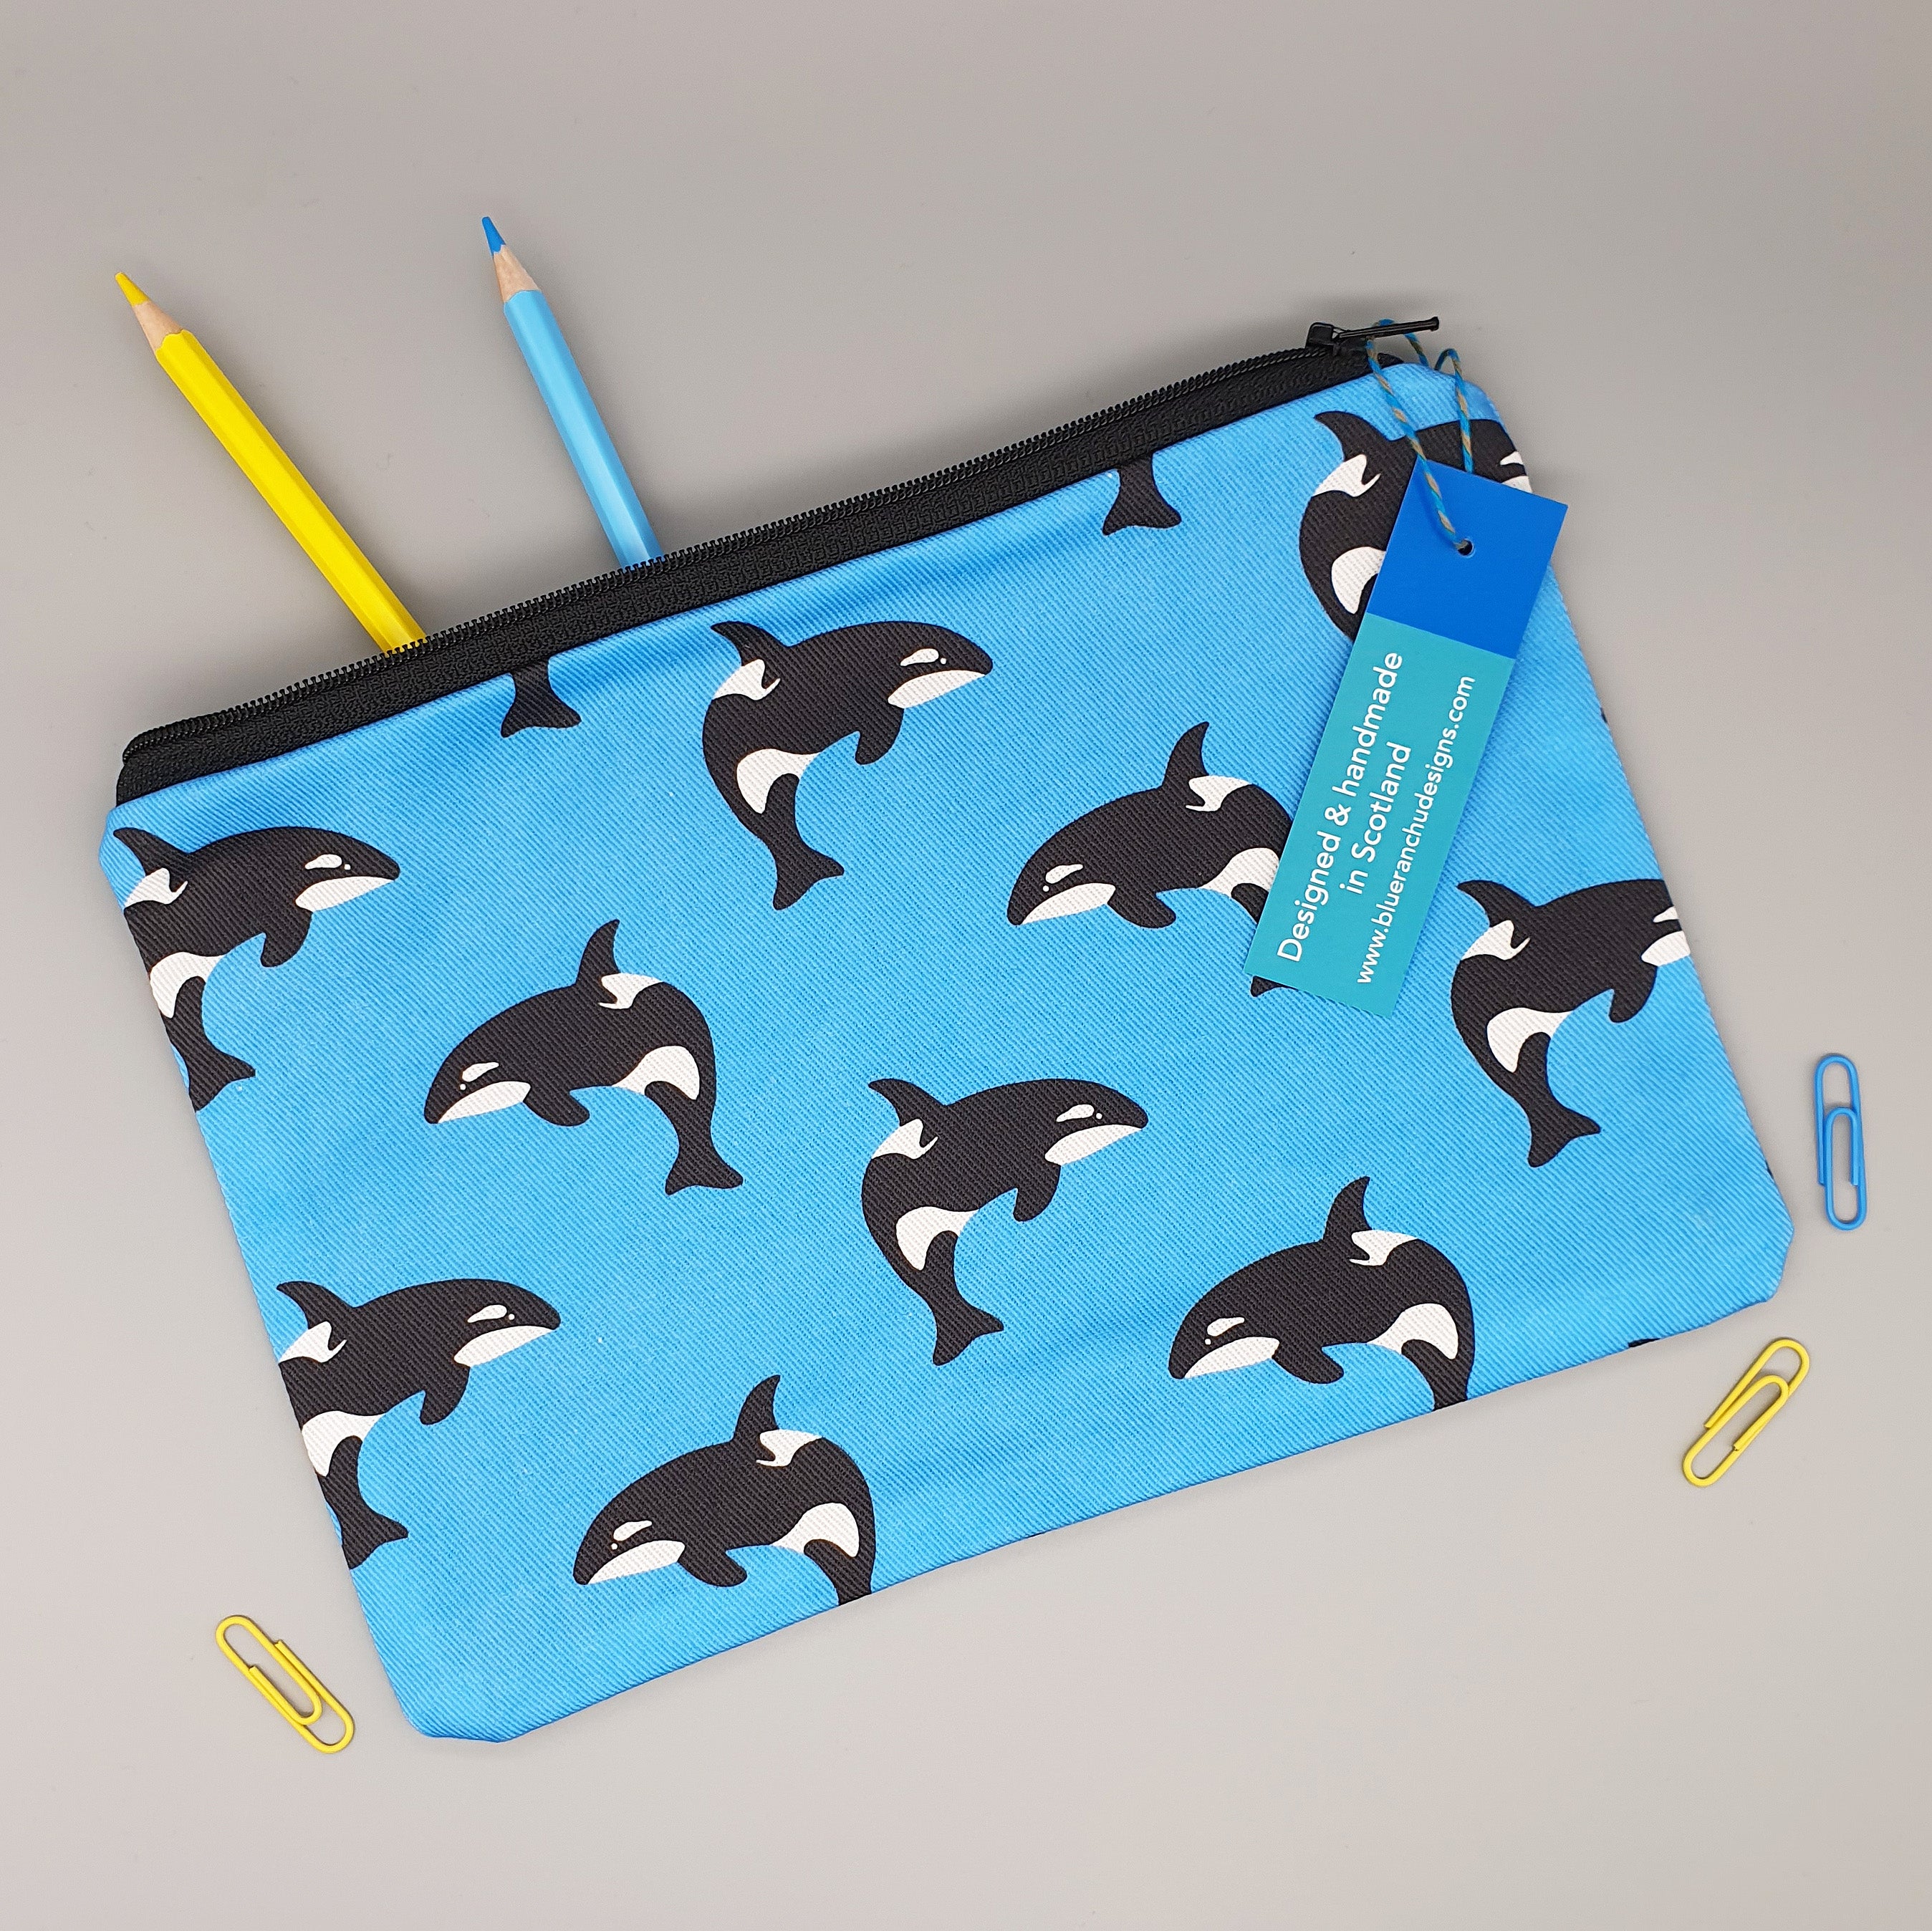 Orca whale pencil case